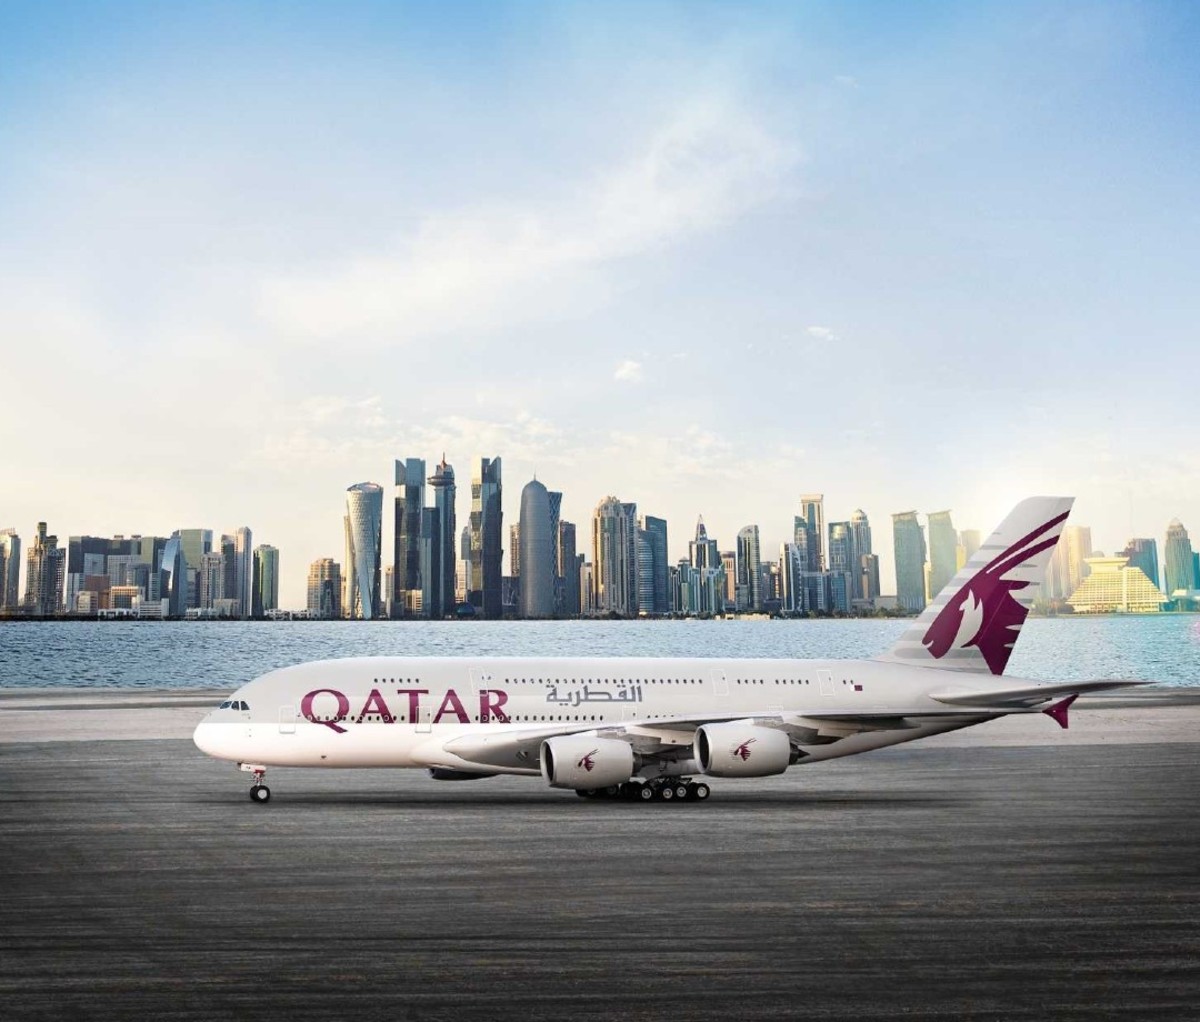 Qatar Airways double-decker plane